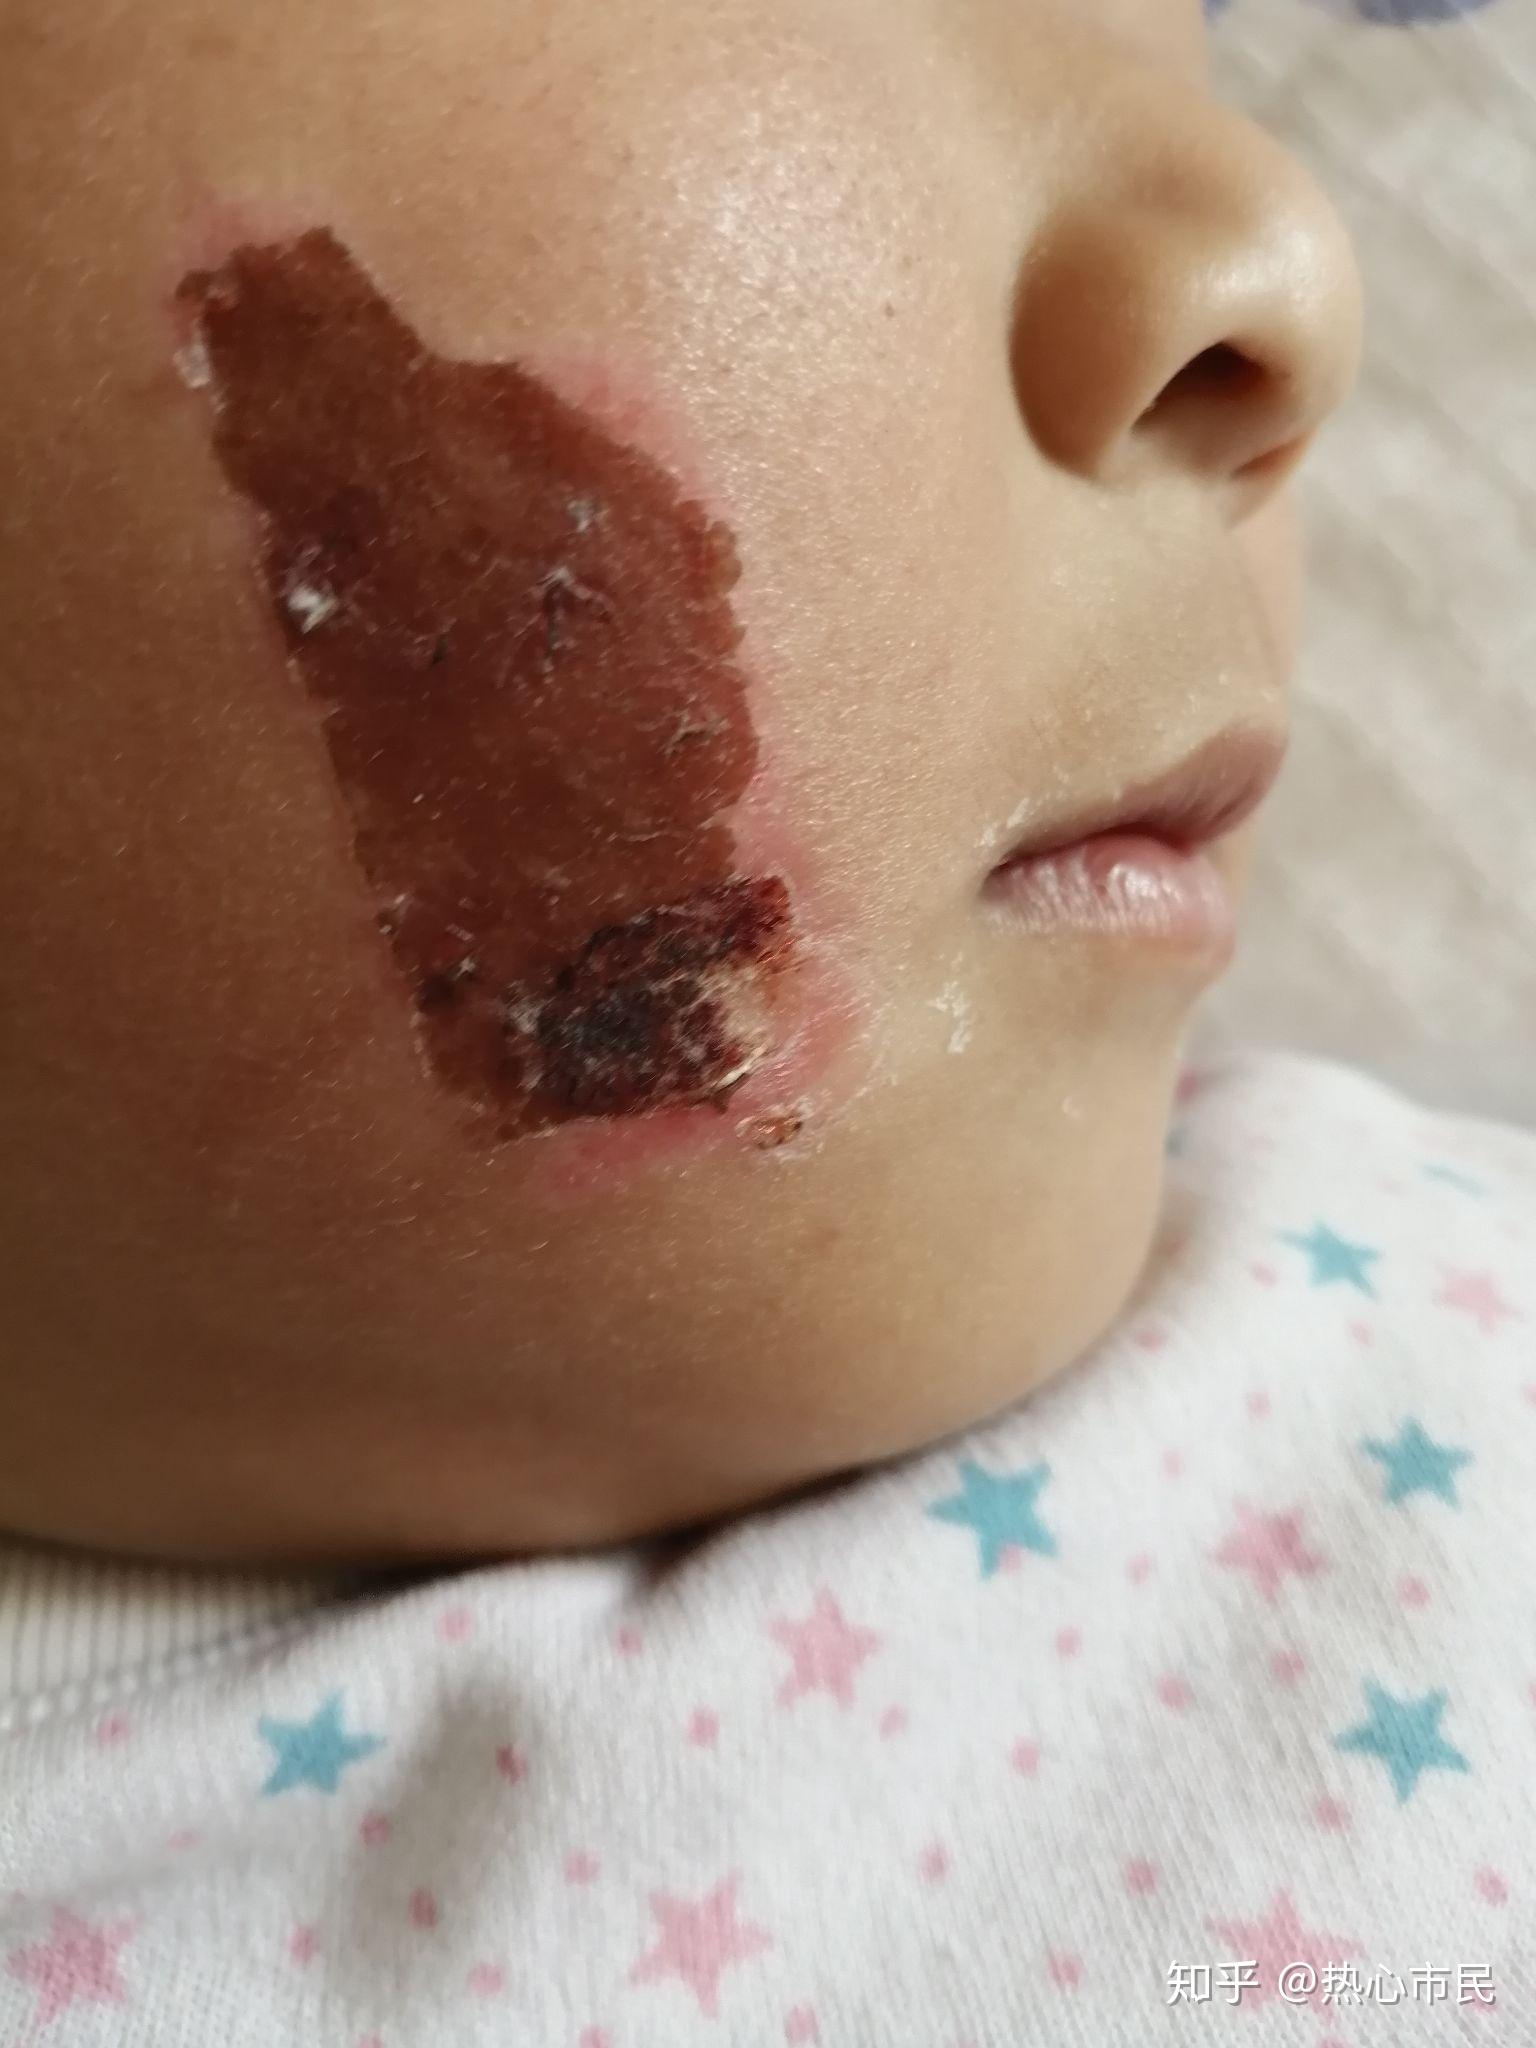 小孩脸部烧伤照片图片